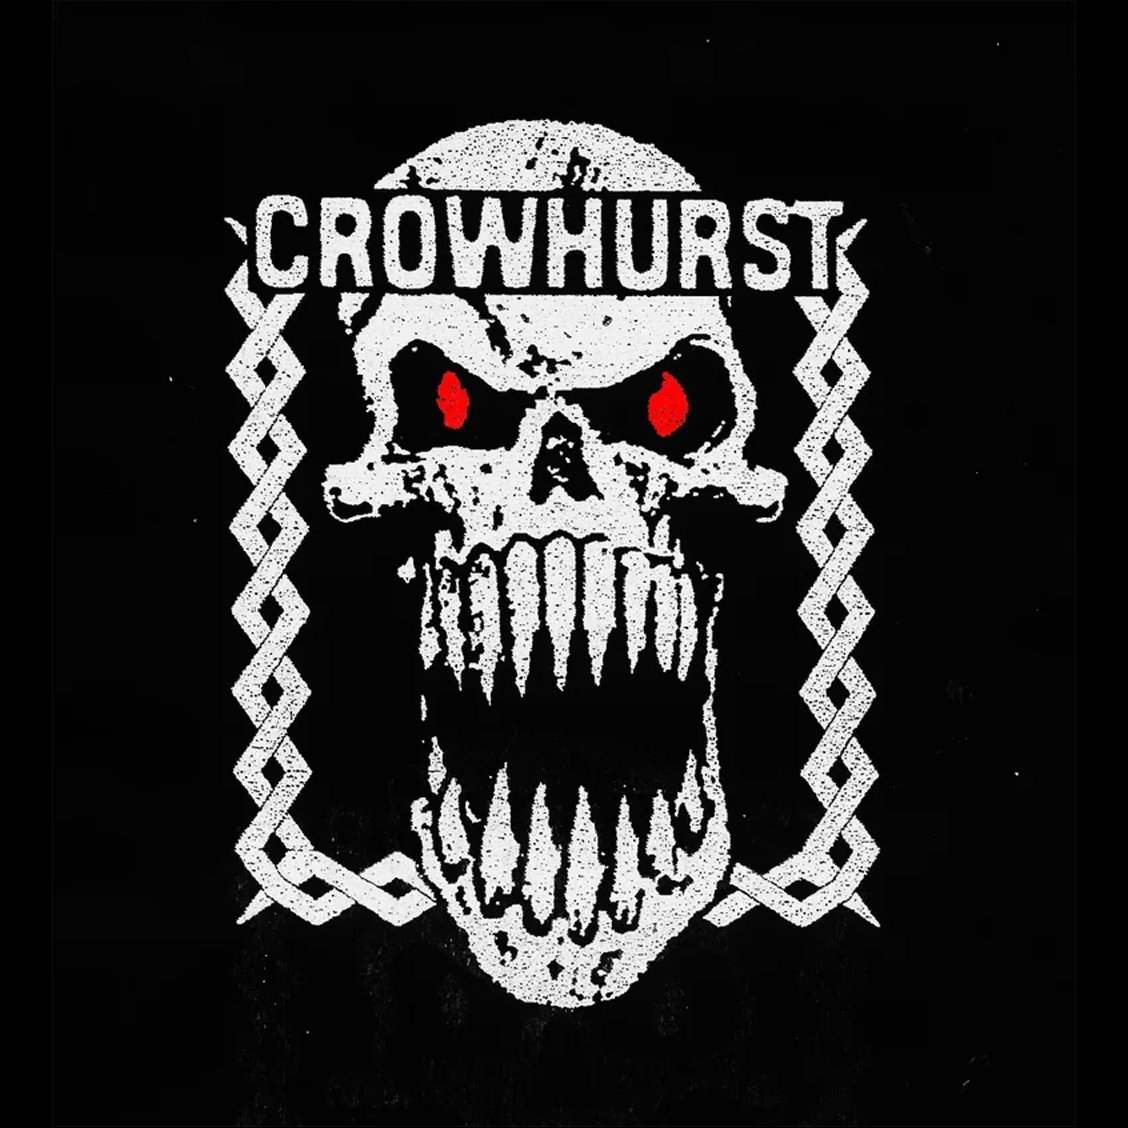 Crowhurst "Harsh Music For Harsh People" LS Shirt